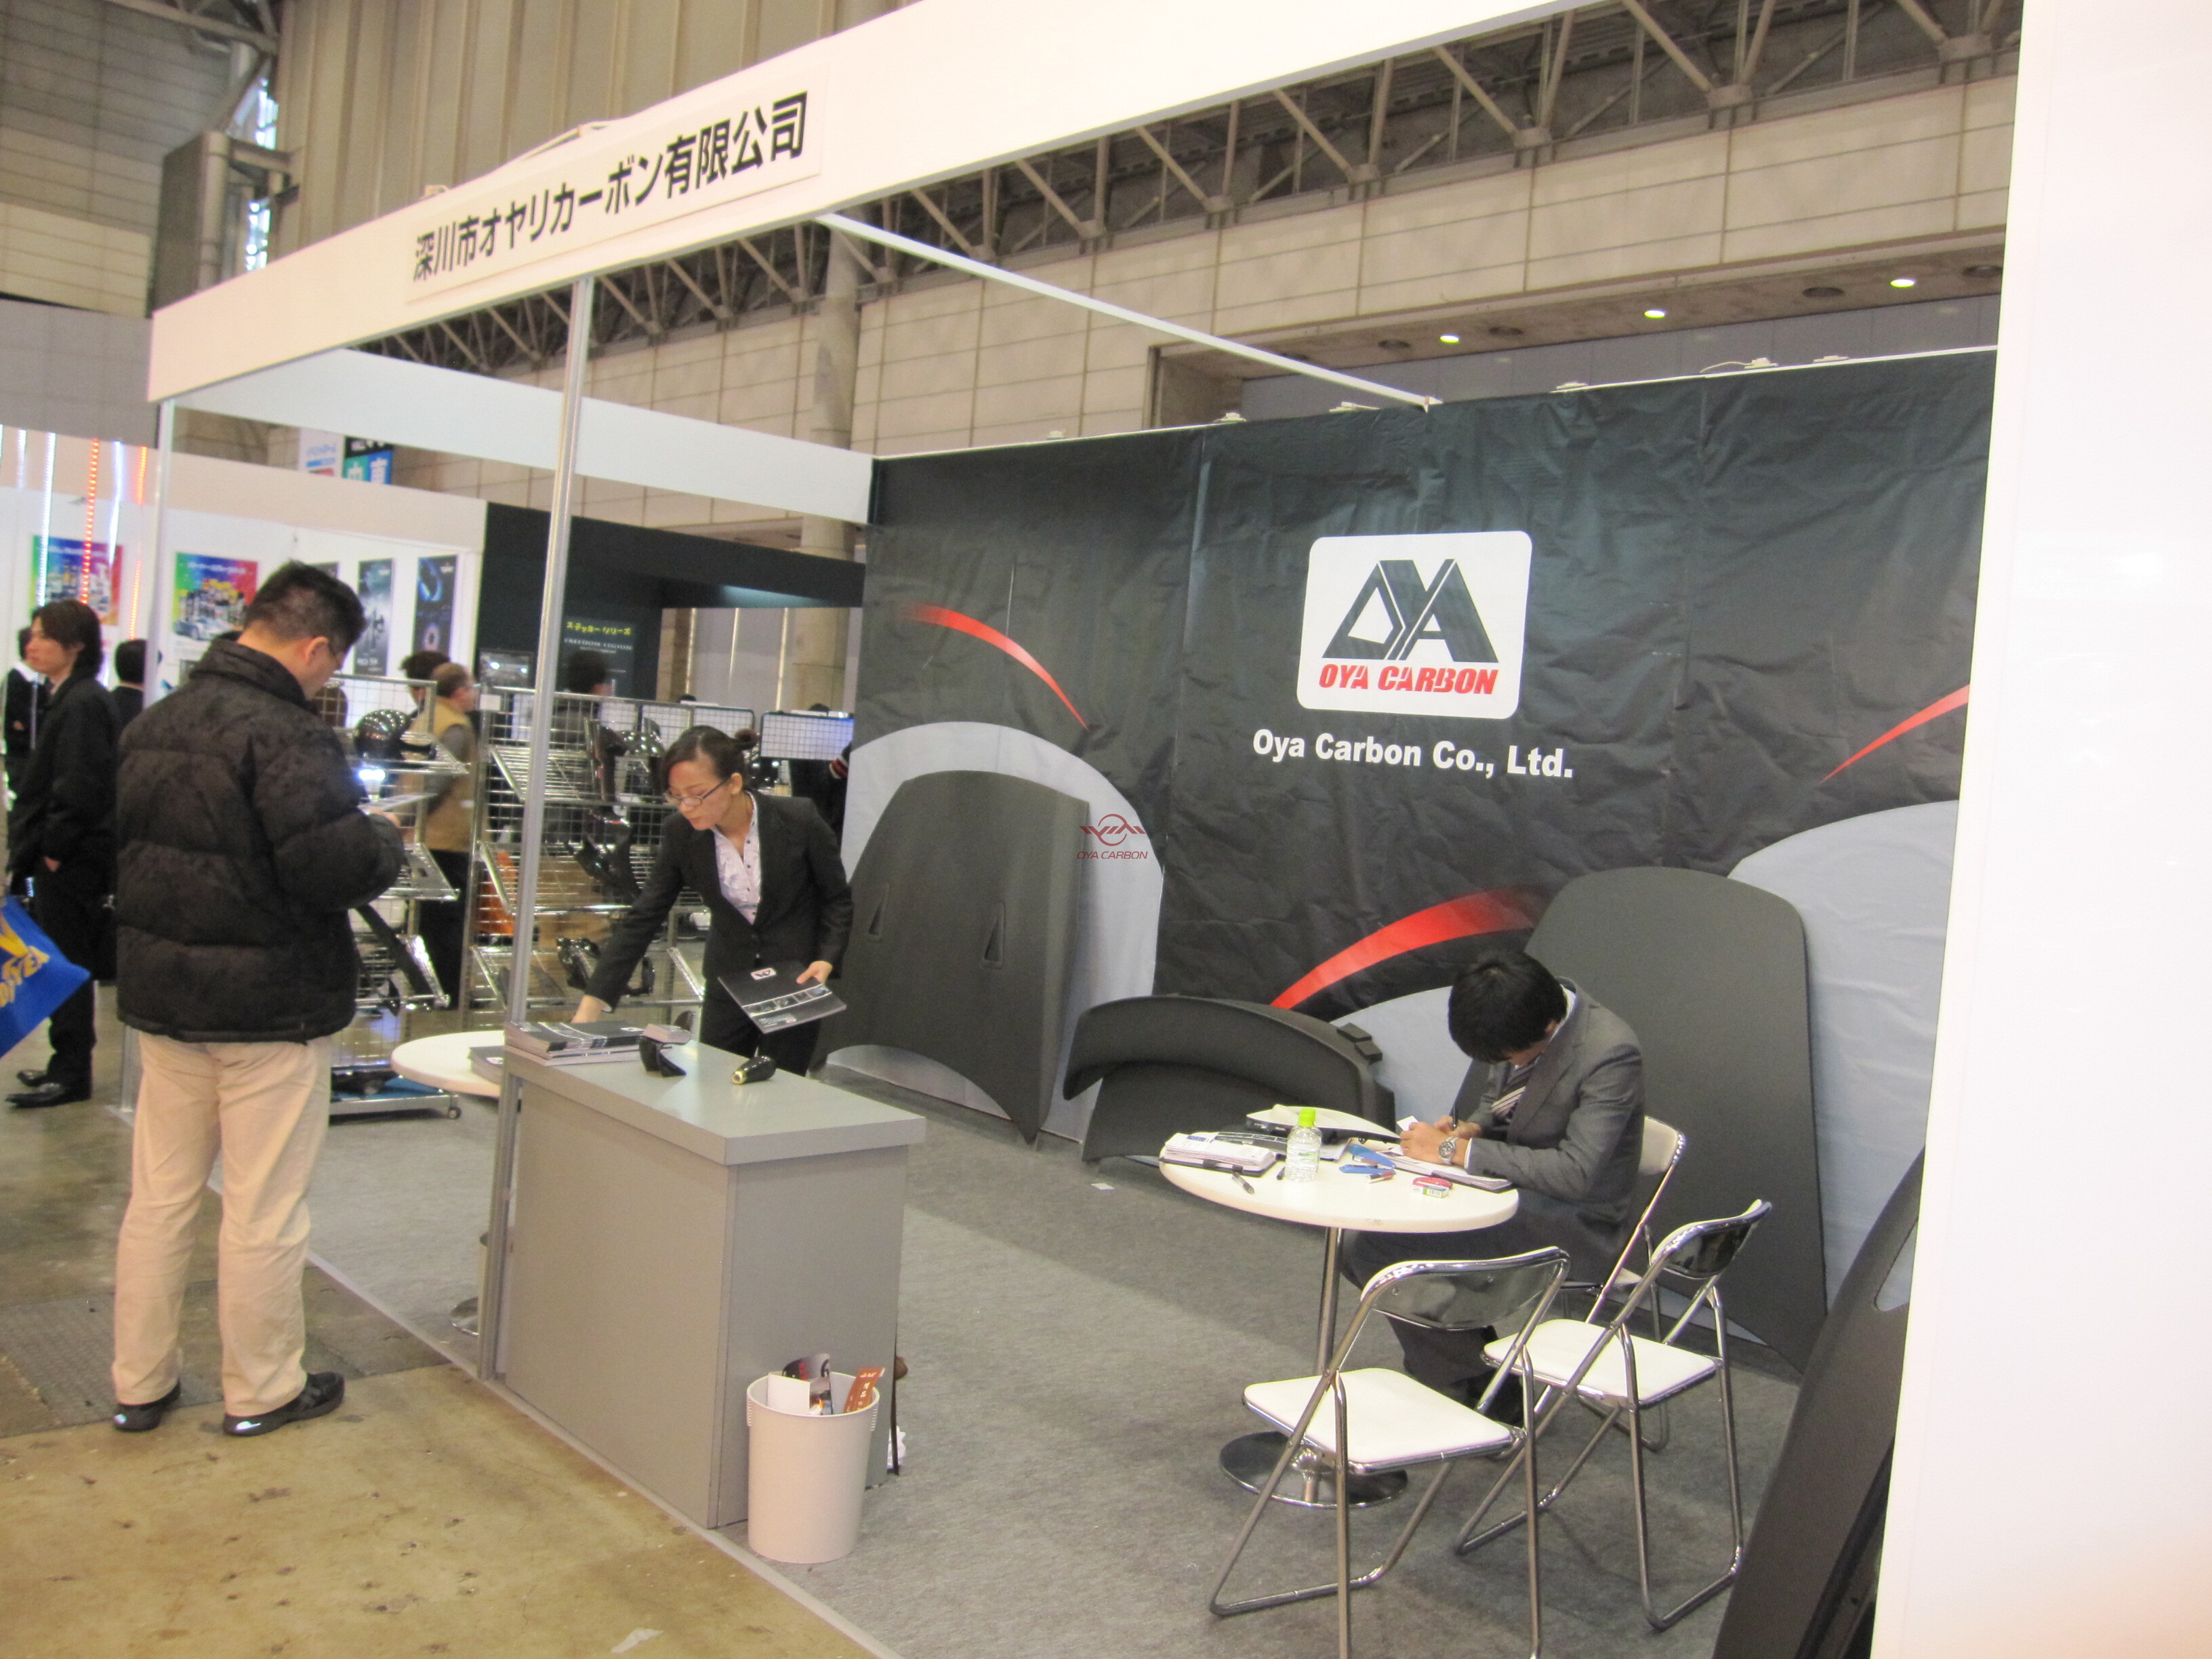 日本东京改装车展Tokyo Auto Salon 2011.1.14-1.16 5